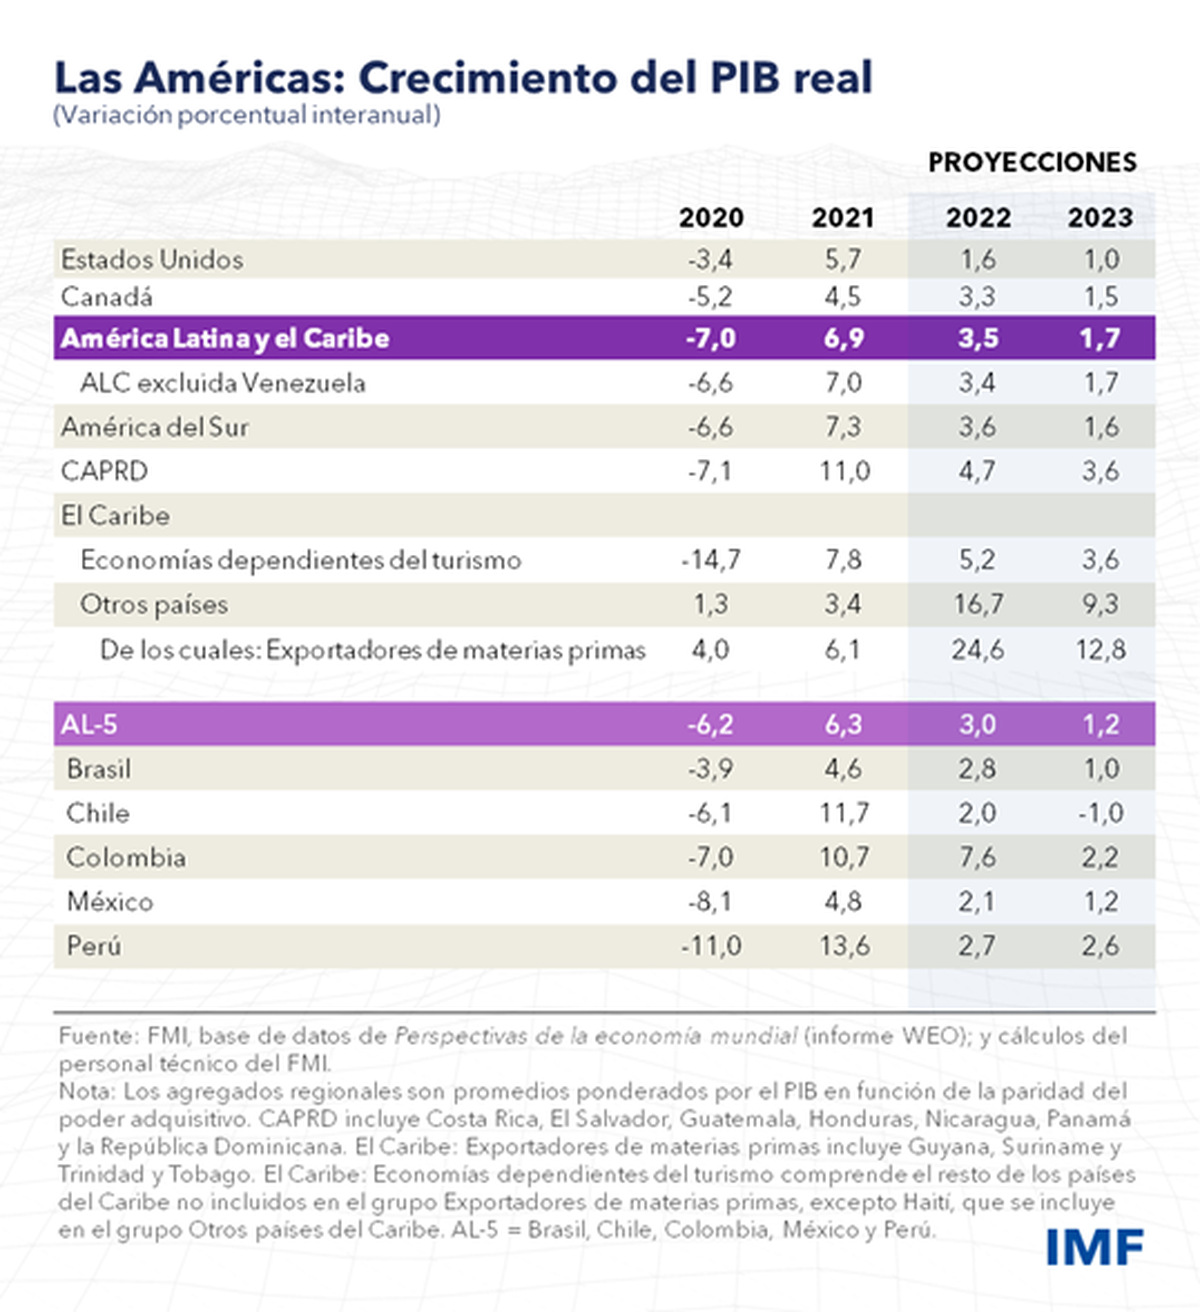 Proyecciones de crecimiento económico revisadas a la baja por el FMI en Latinoamérica y el Caribe. 